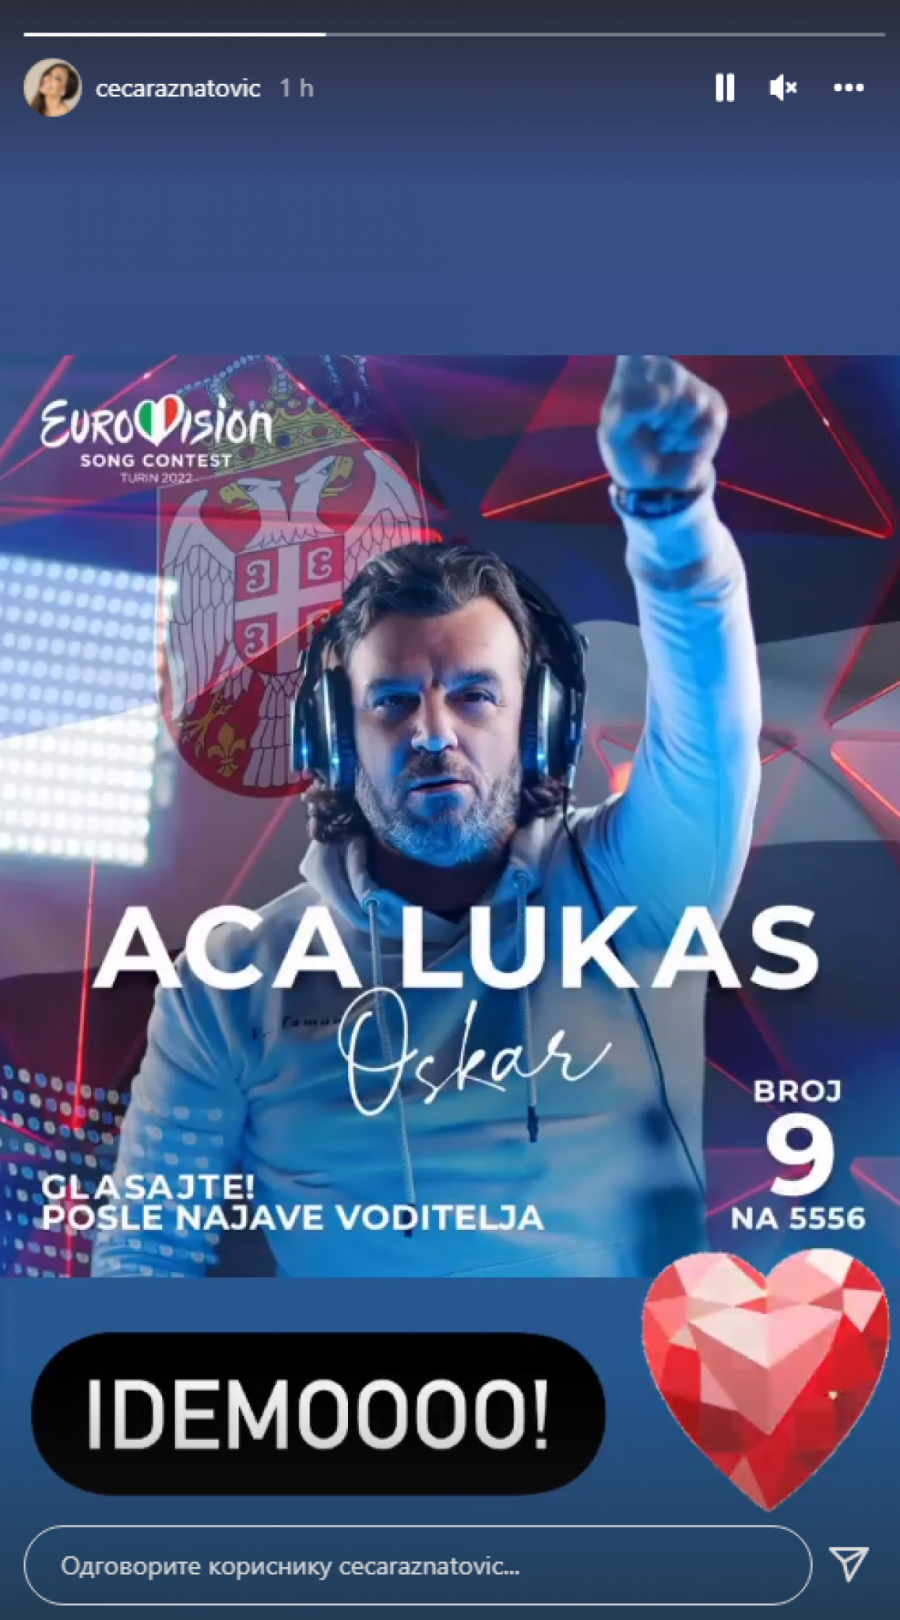 VERUJE U NJEGA! Ceca Ražnatović javno podržala Acu Lukasa u pohodu na njegovu pobedu na izboru za pesmu Evrovizije! (FOTO)